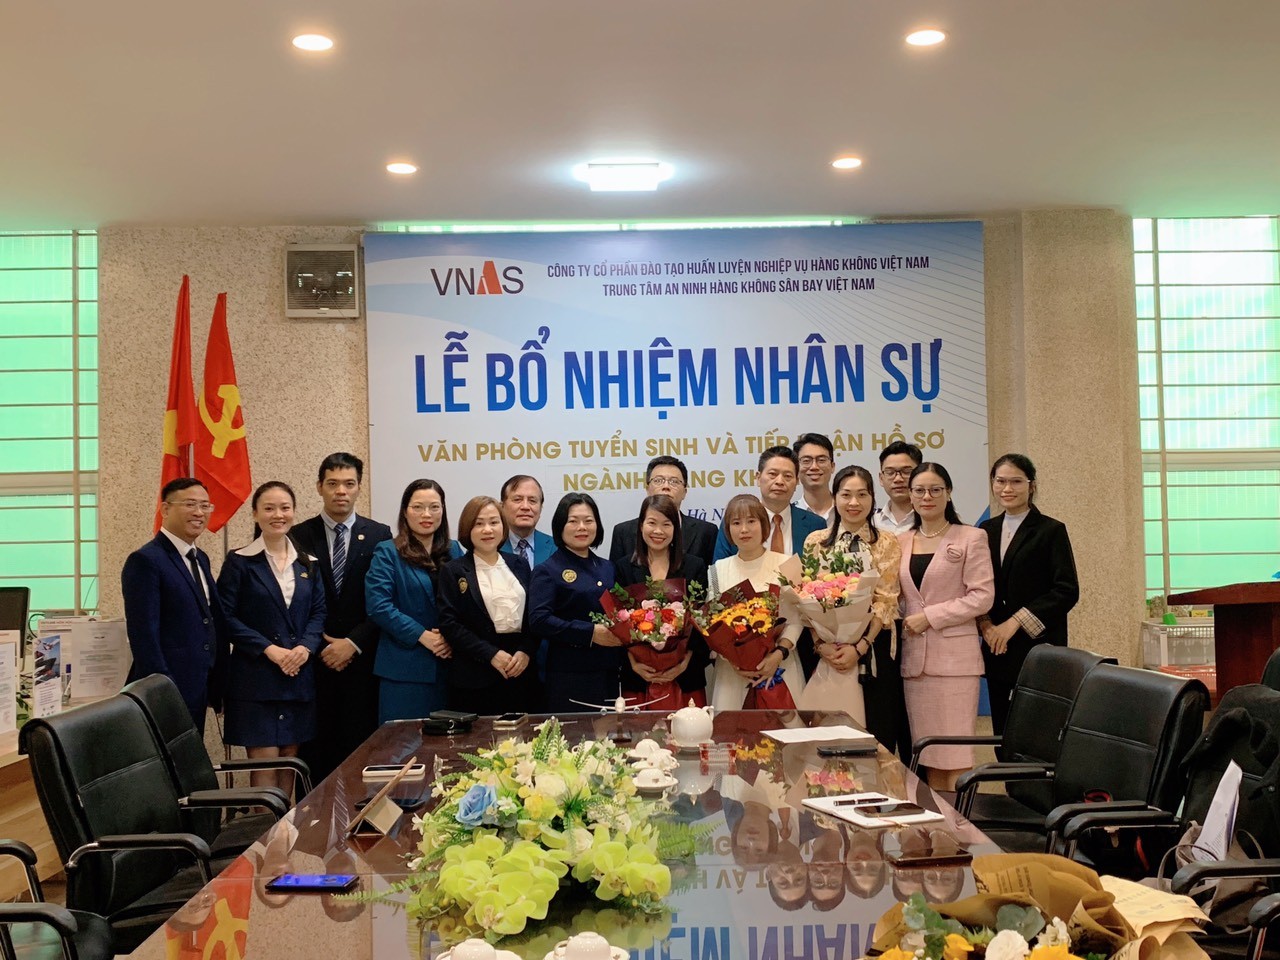 TVNAS-Trung tâm An ninh hàng không Sân bay Việt Nam tổ chức Lễ bổ nhiệm nhân sự